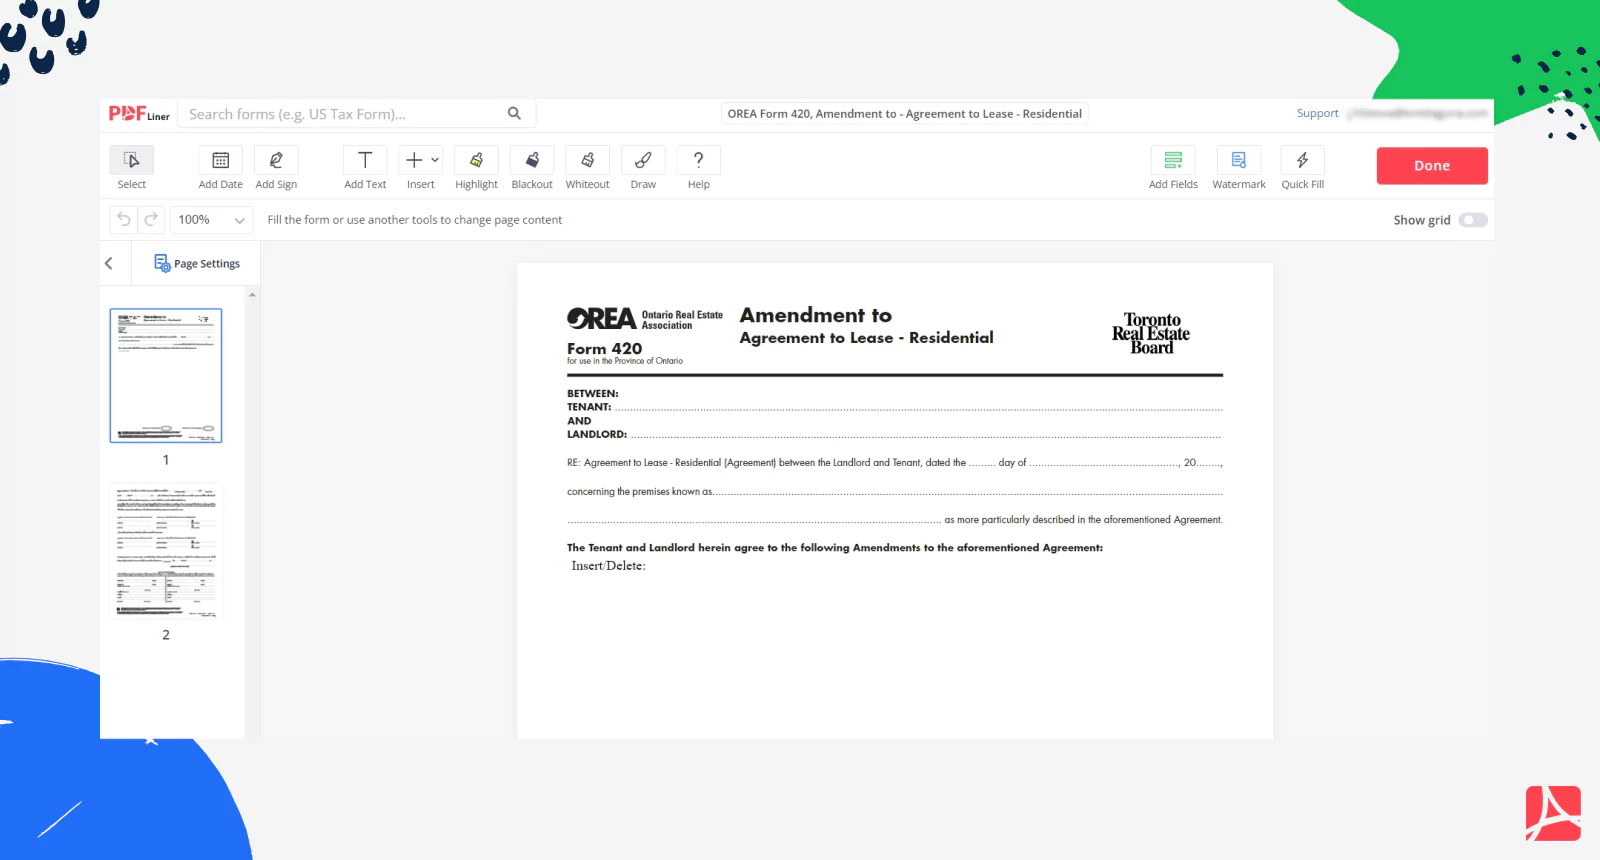 OREA Form 420 on PDFLiner